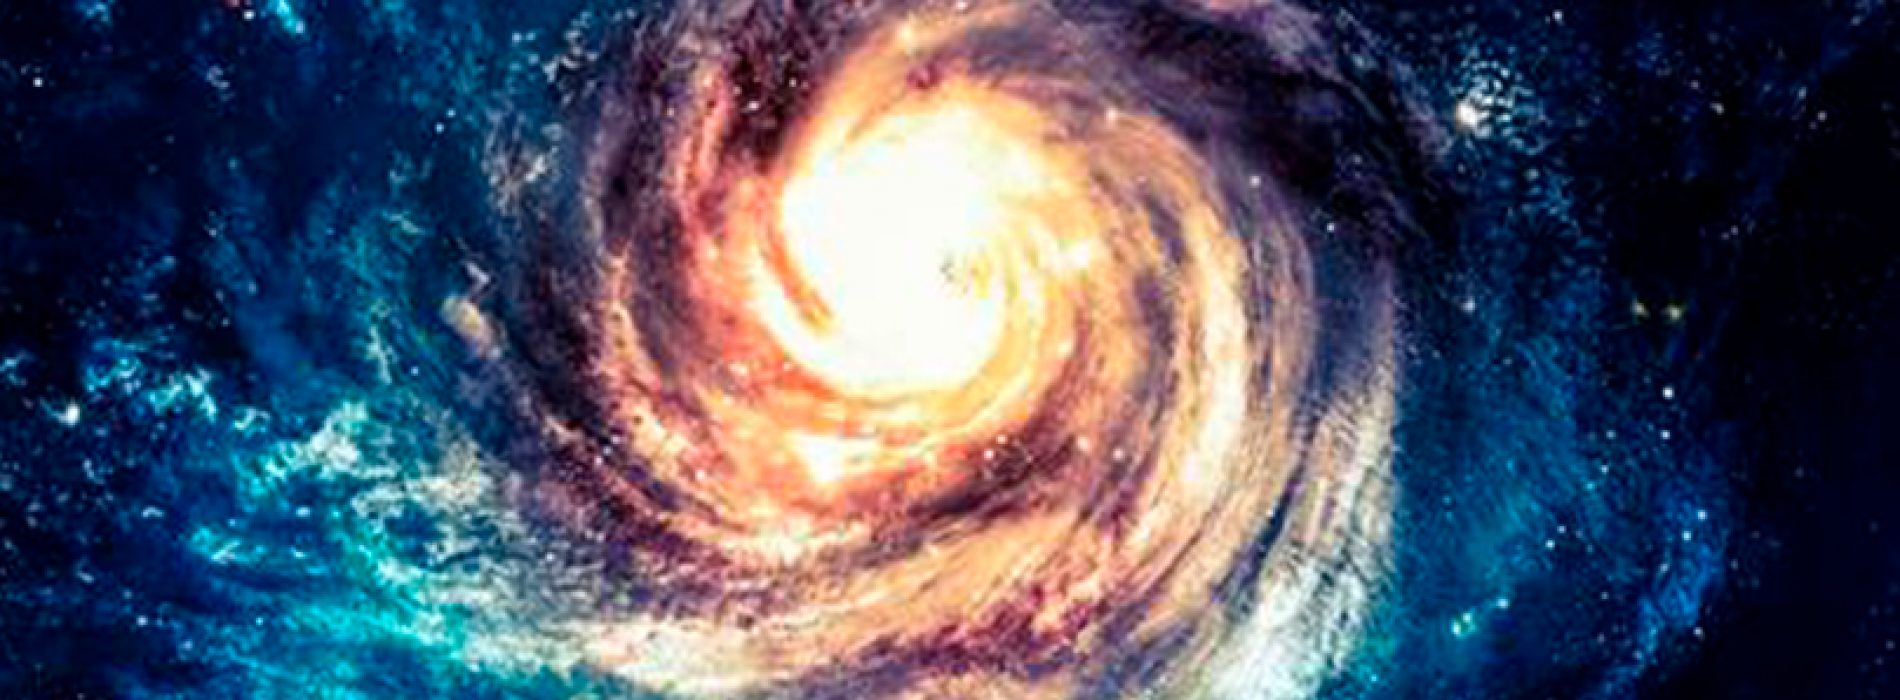 Universidad de Chile dictará curso de Galaxias para público general